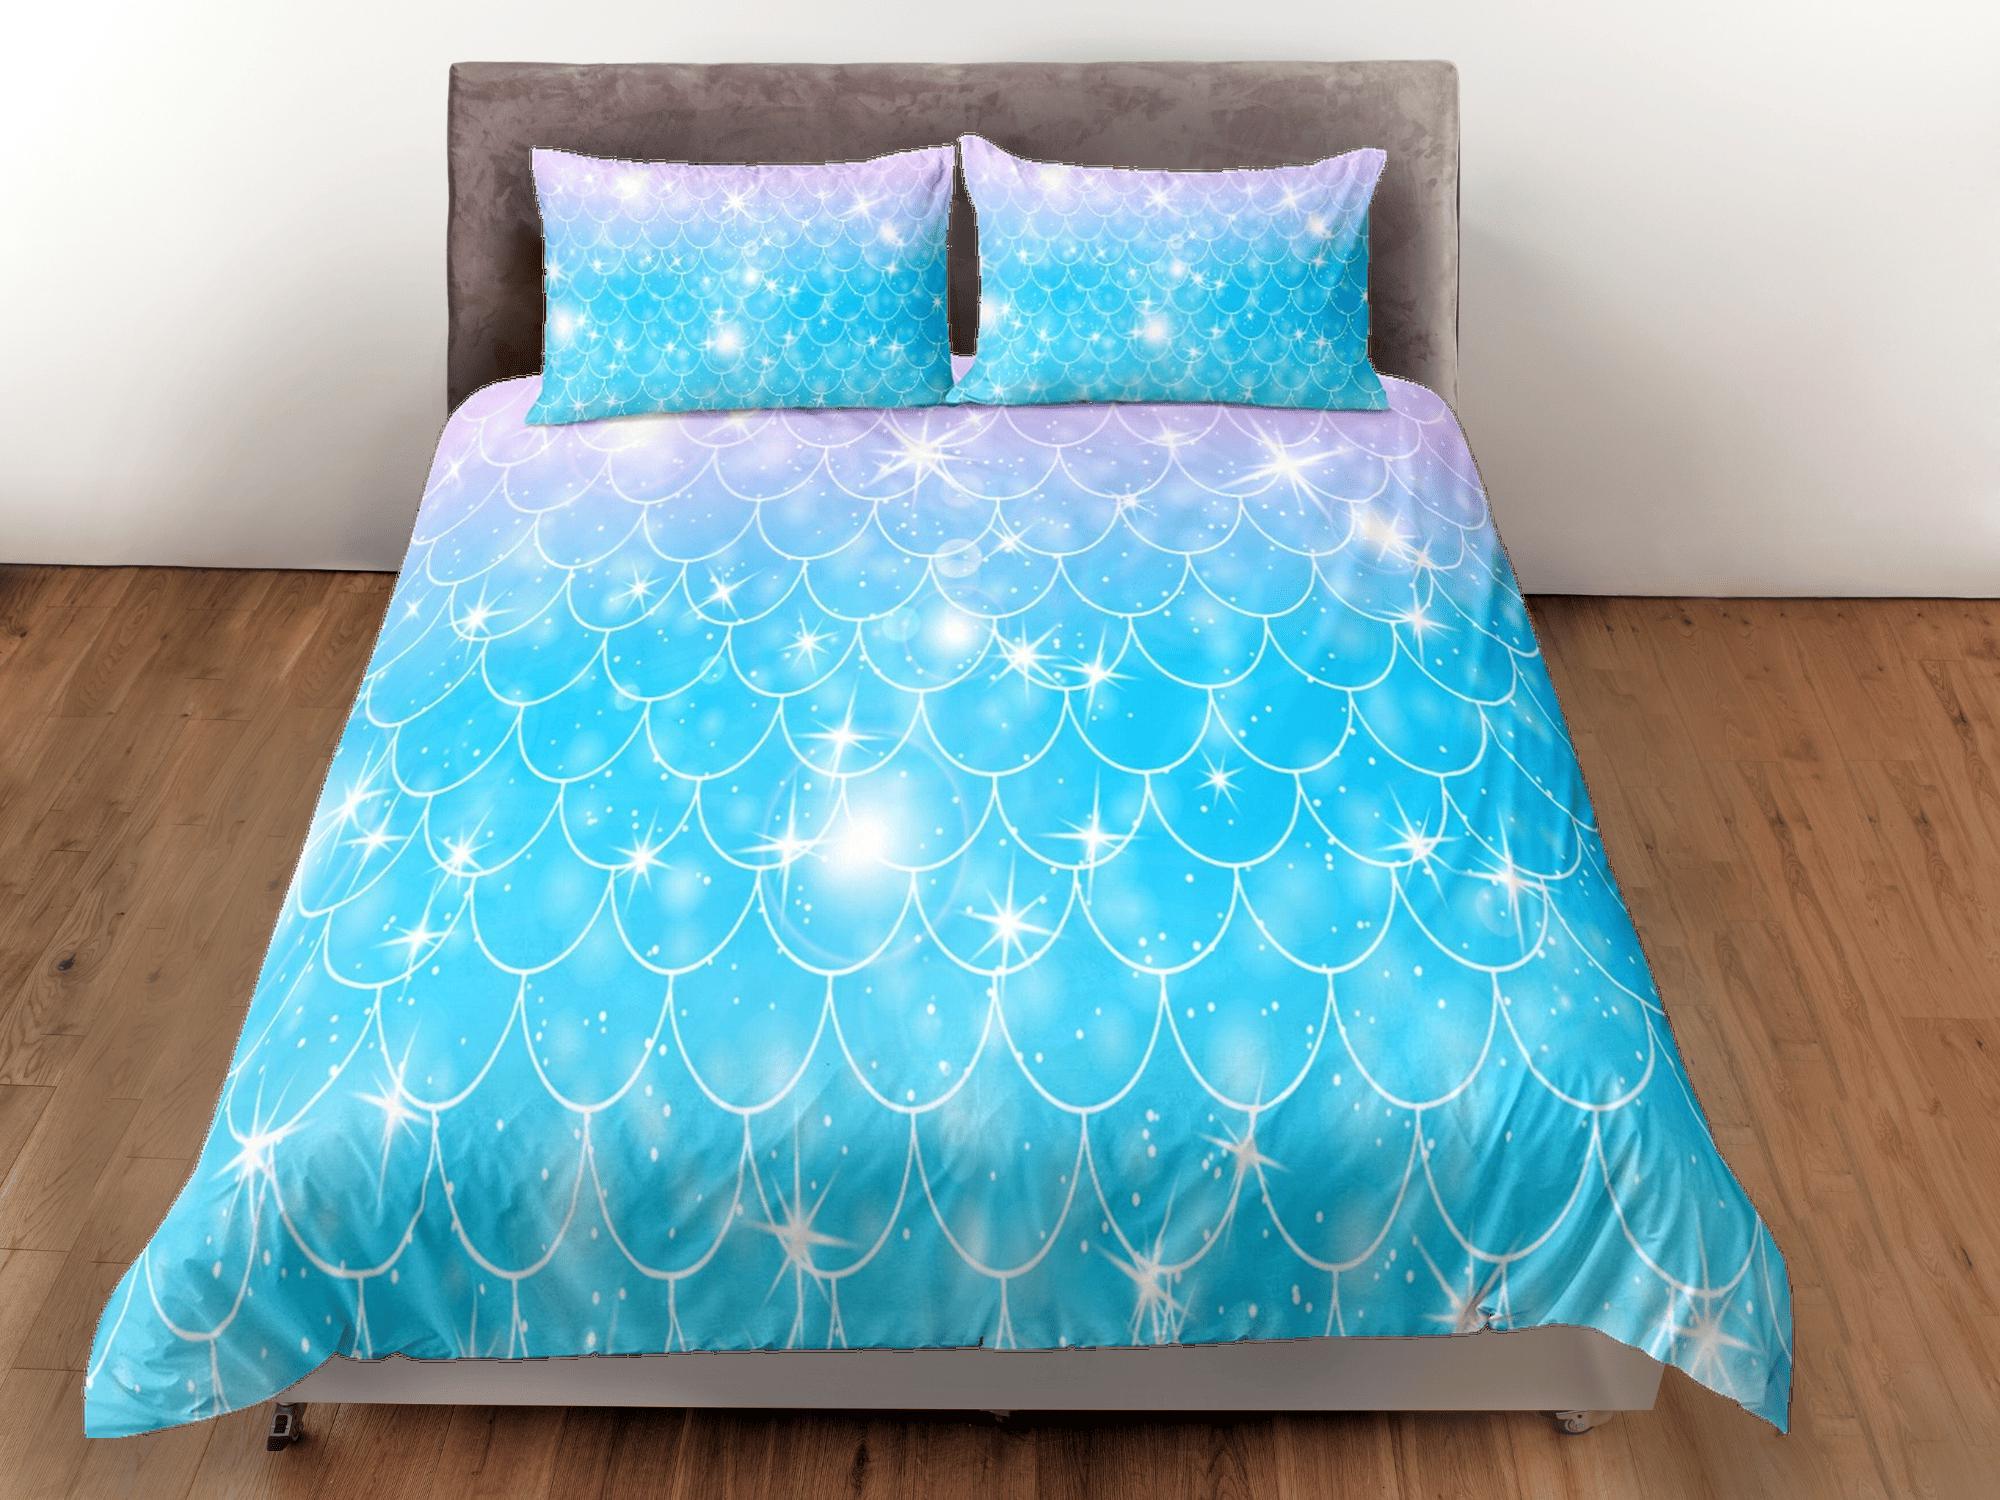 daintyduvet Mermaid Tail Duvet Cover Set, Pastel Rainbow Blanket Dorm Bedding Set, Comforter Cover Kids Bedding